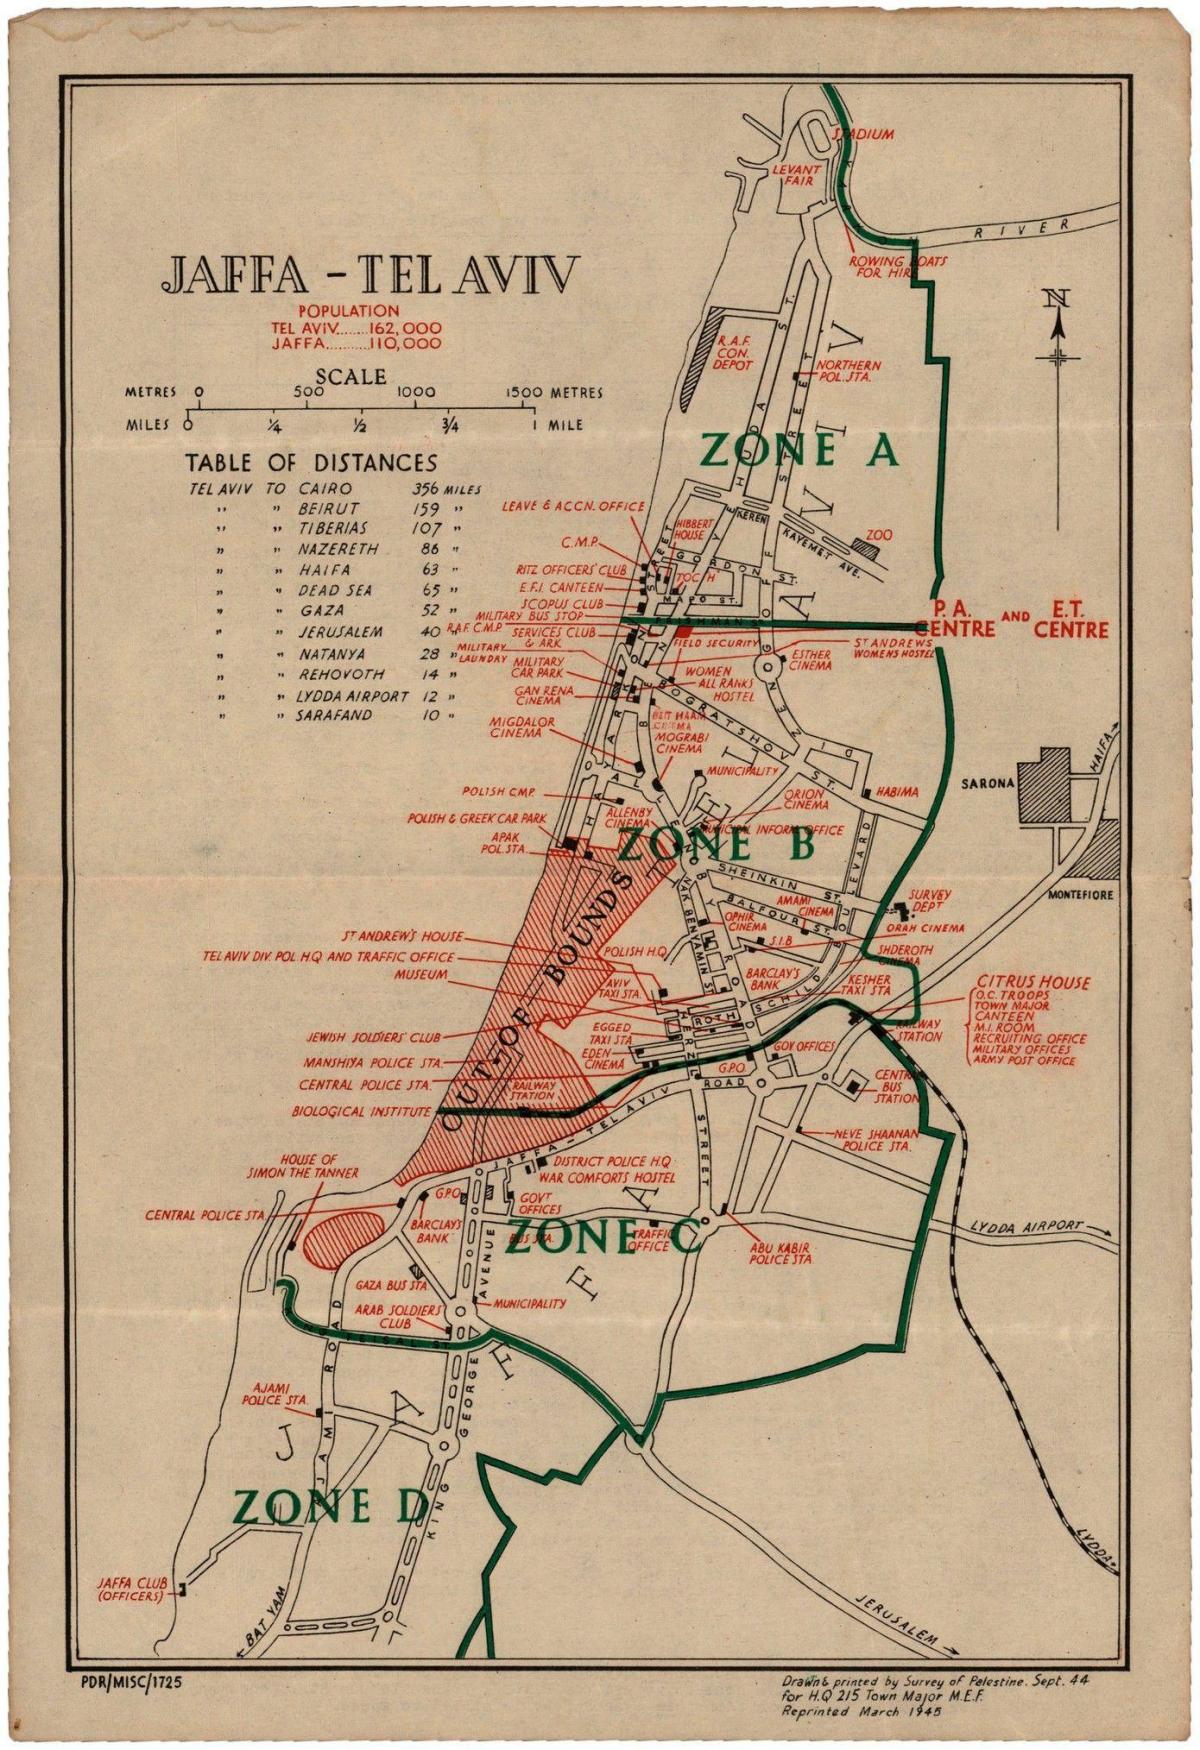 Tel Aviv historical map